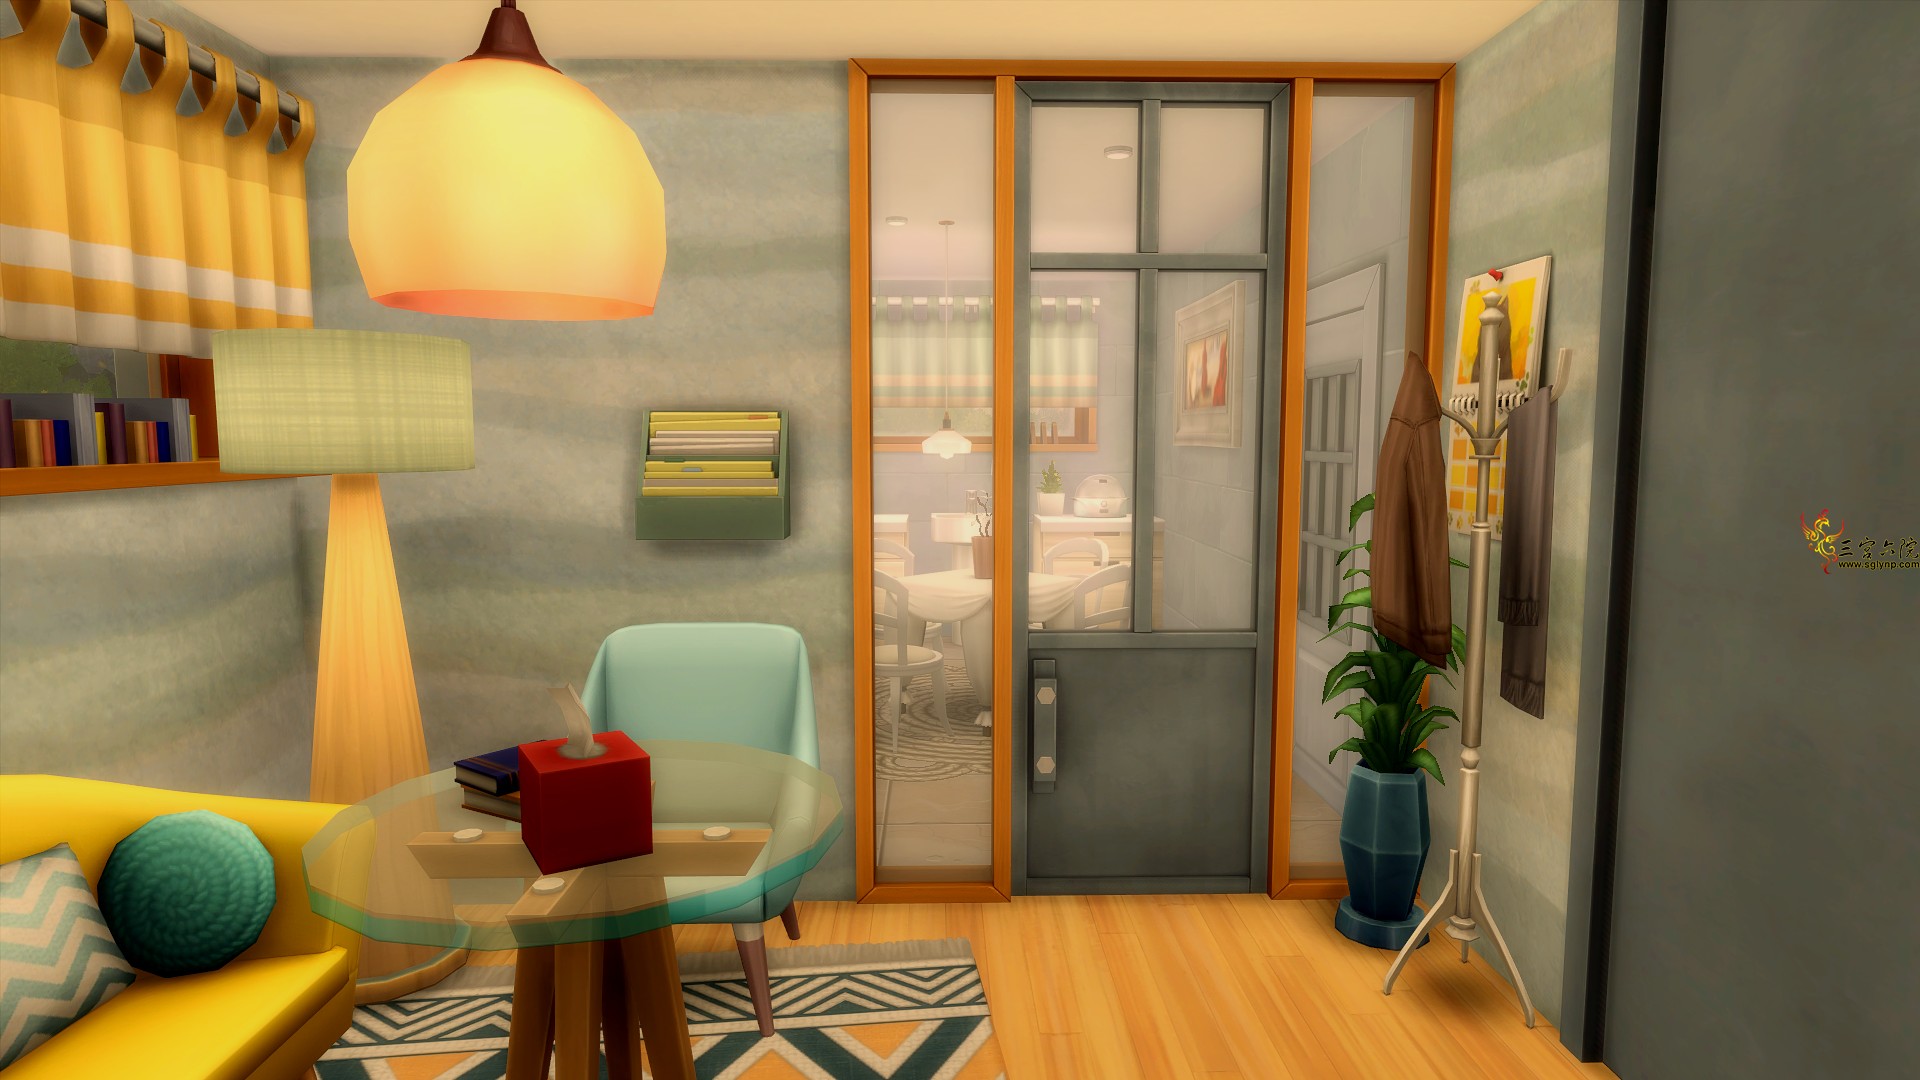 Sims 4 Screenshot 2021.01.12 - 21.19.30.29.png